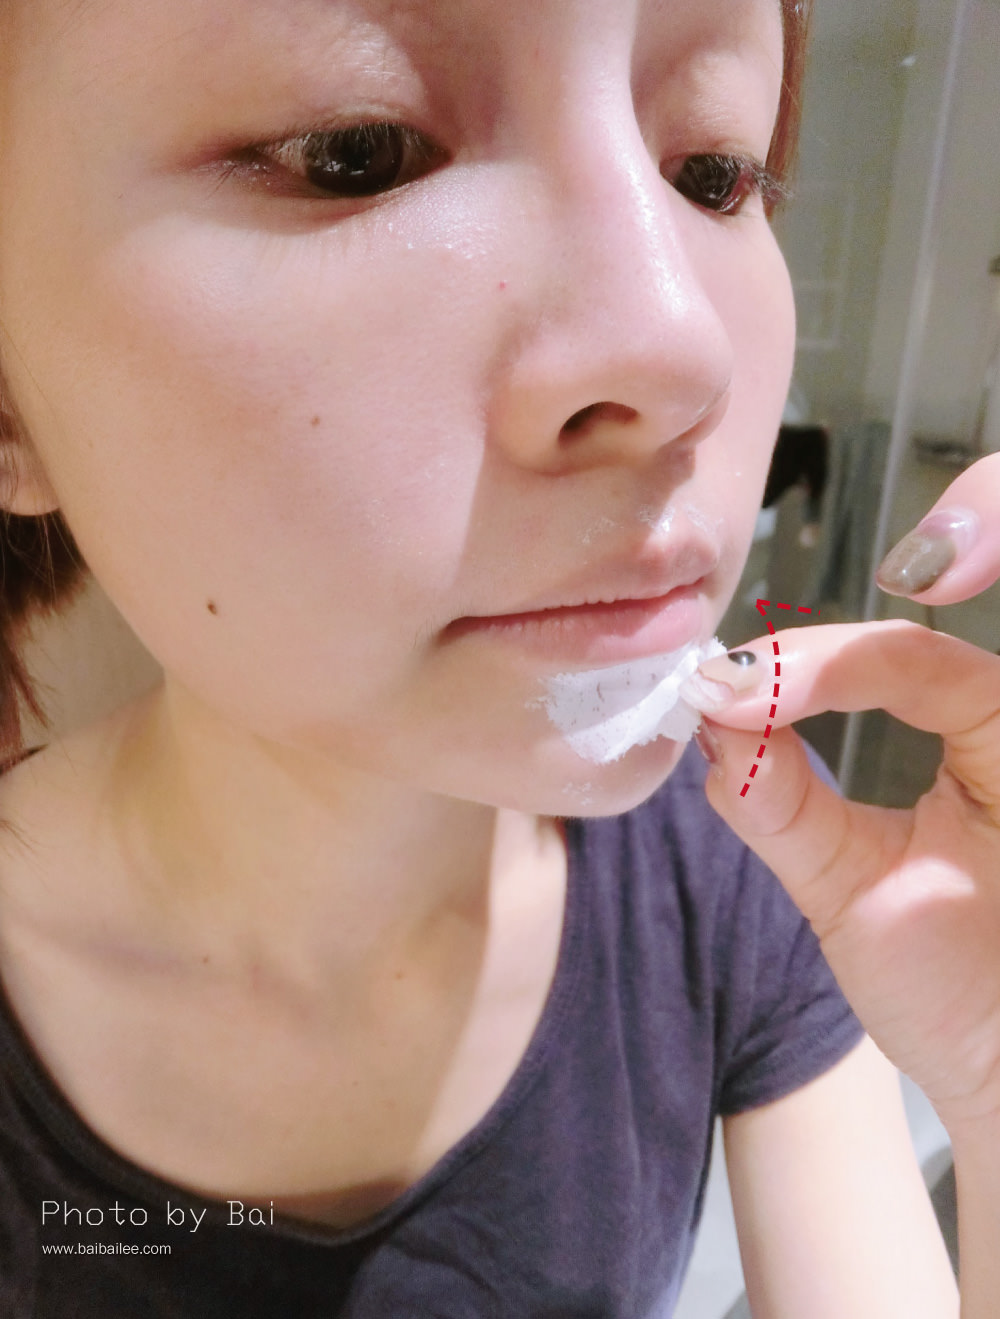 [保養] 毛孔乾淨看的到!10分鐘讓毛孔乾乾淨淨,對抗粉刺新選擇-聖克萊爾 深層淨膚泥膜